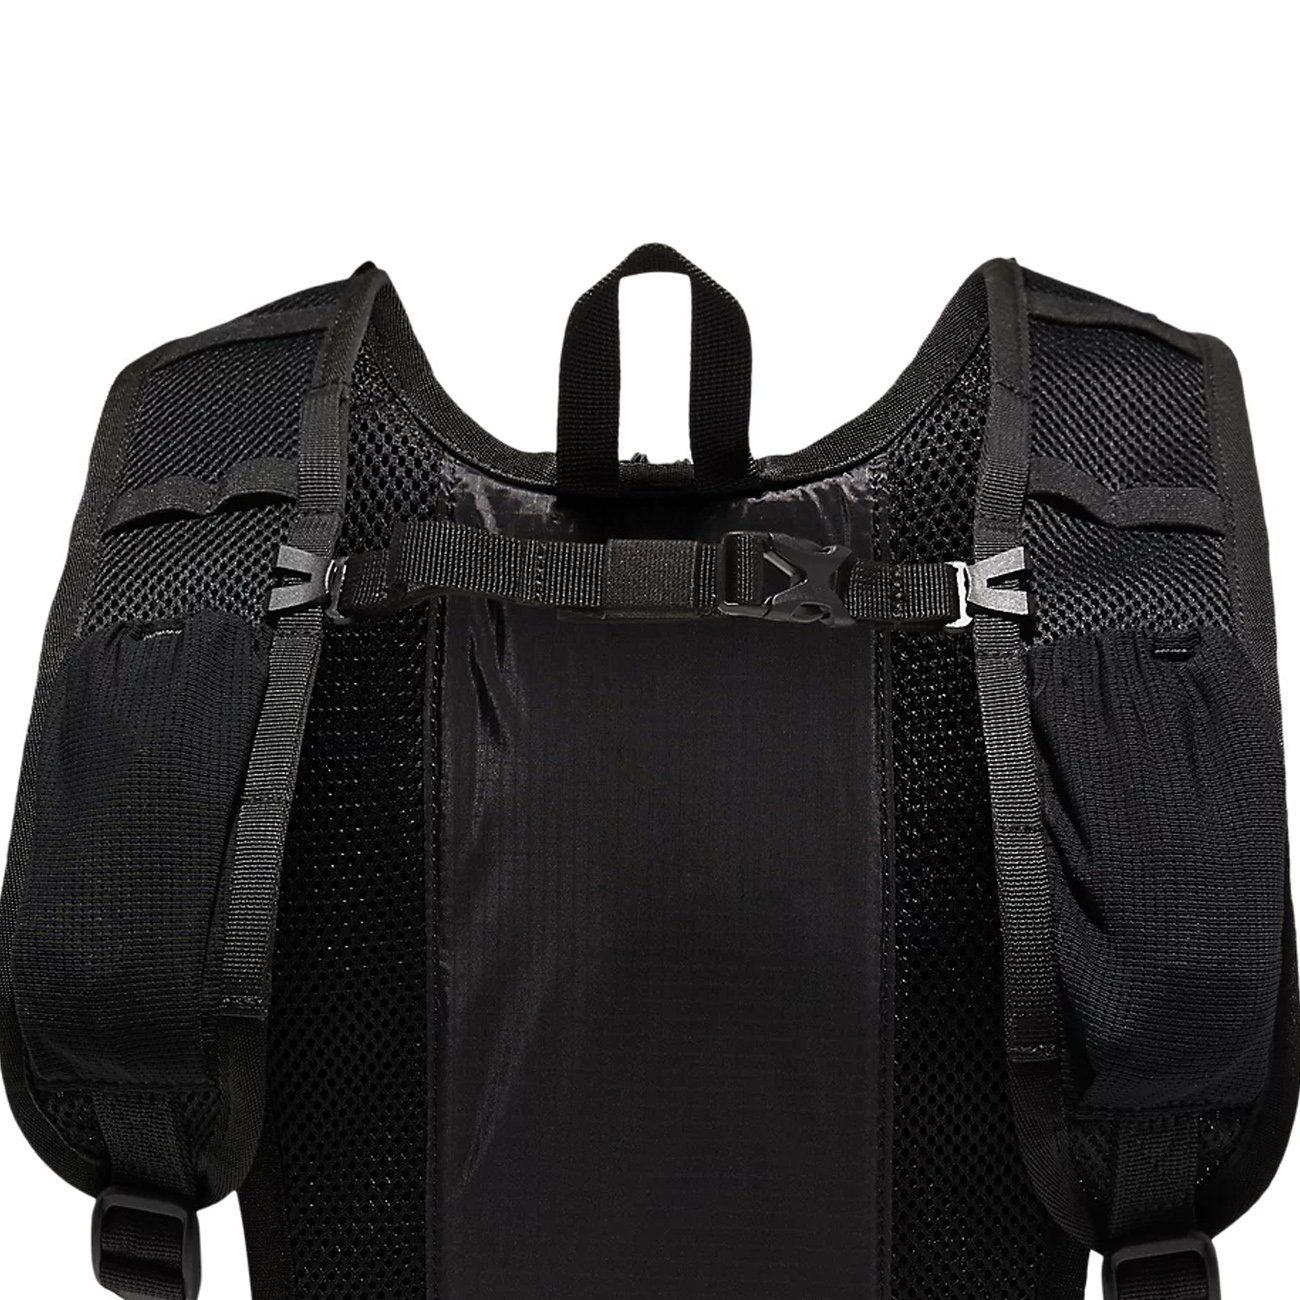 Asics Daypack Backpack 2.0 Performance Black Asics Running Lightweight